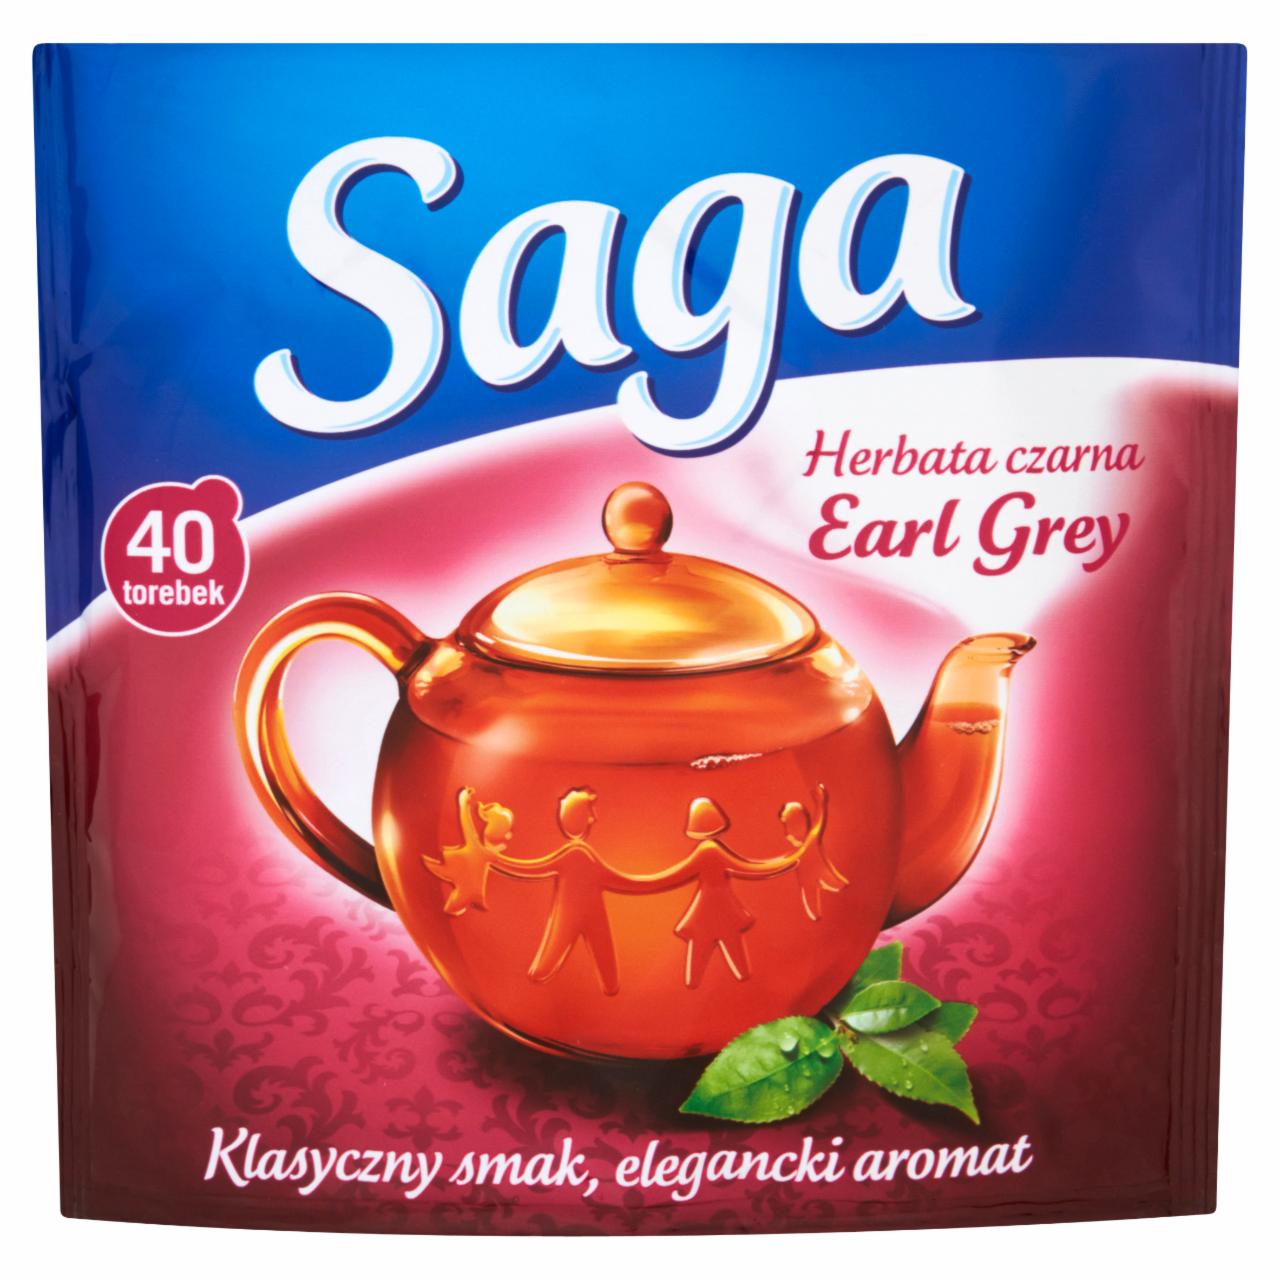 Zdjęcia - Saga Earl Grey Herbata czarna 60 g (40 torebek)